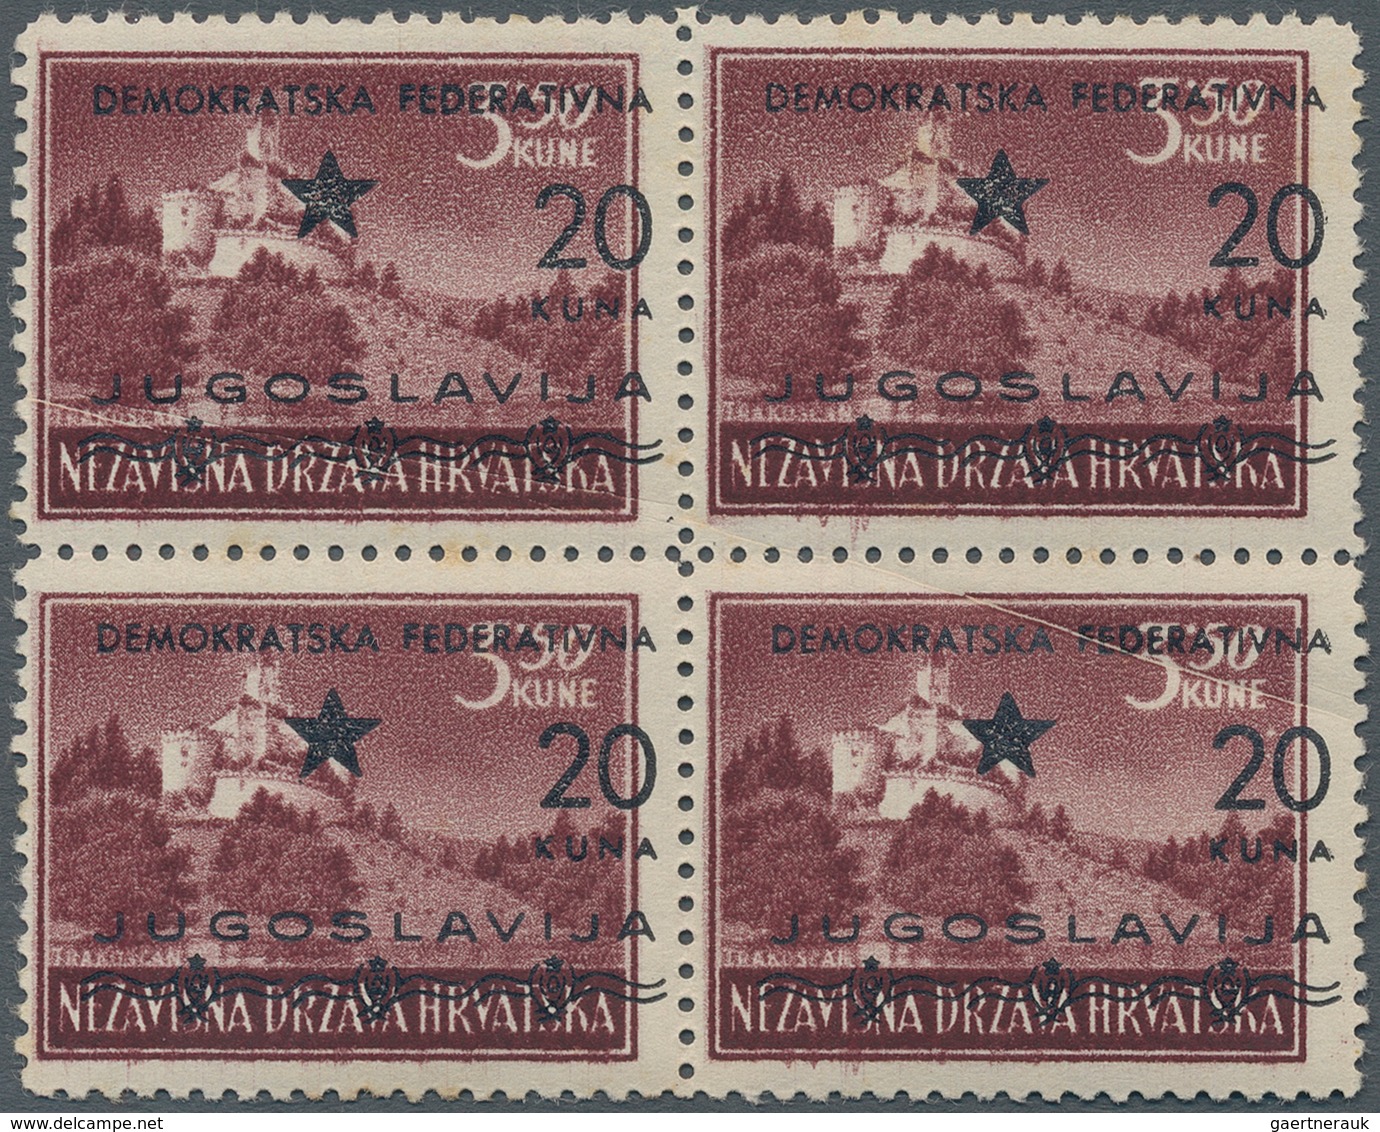 Jugoslawien - Volksrepubliken 1945: Kroatien: 1945 (1-21 Mar). SPLIT ISSUE. Variety 3,50K Purple-bro - Croatie